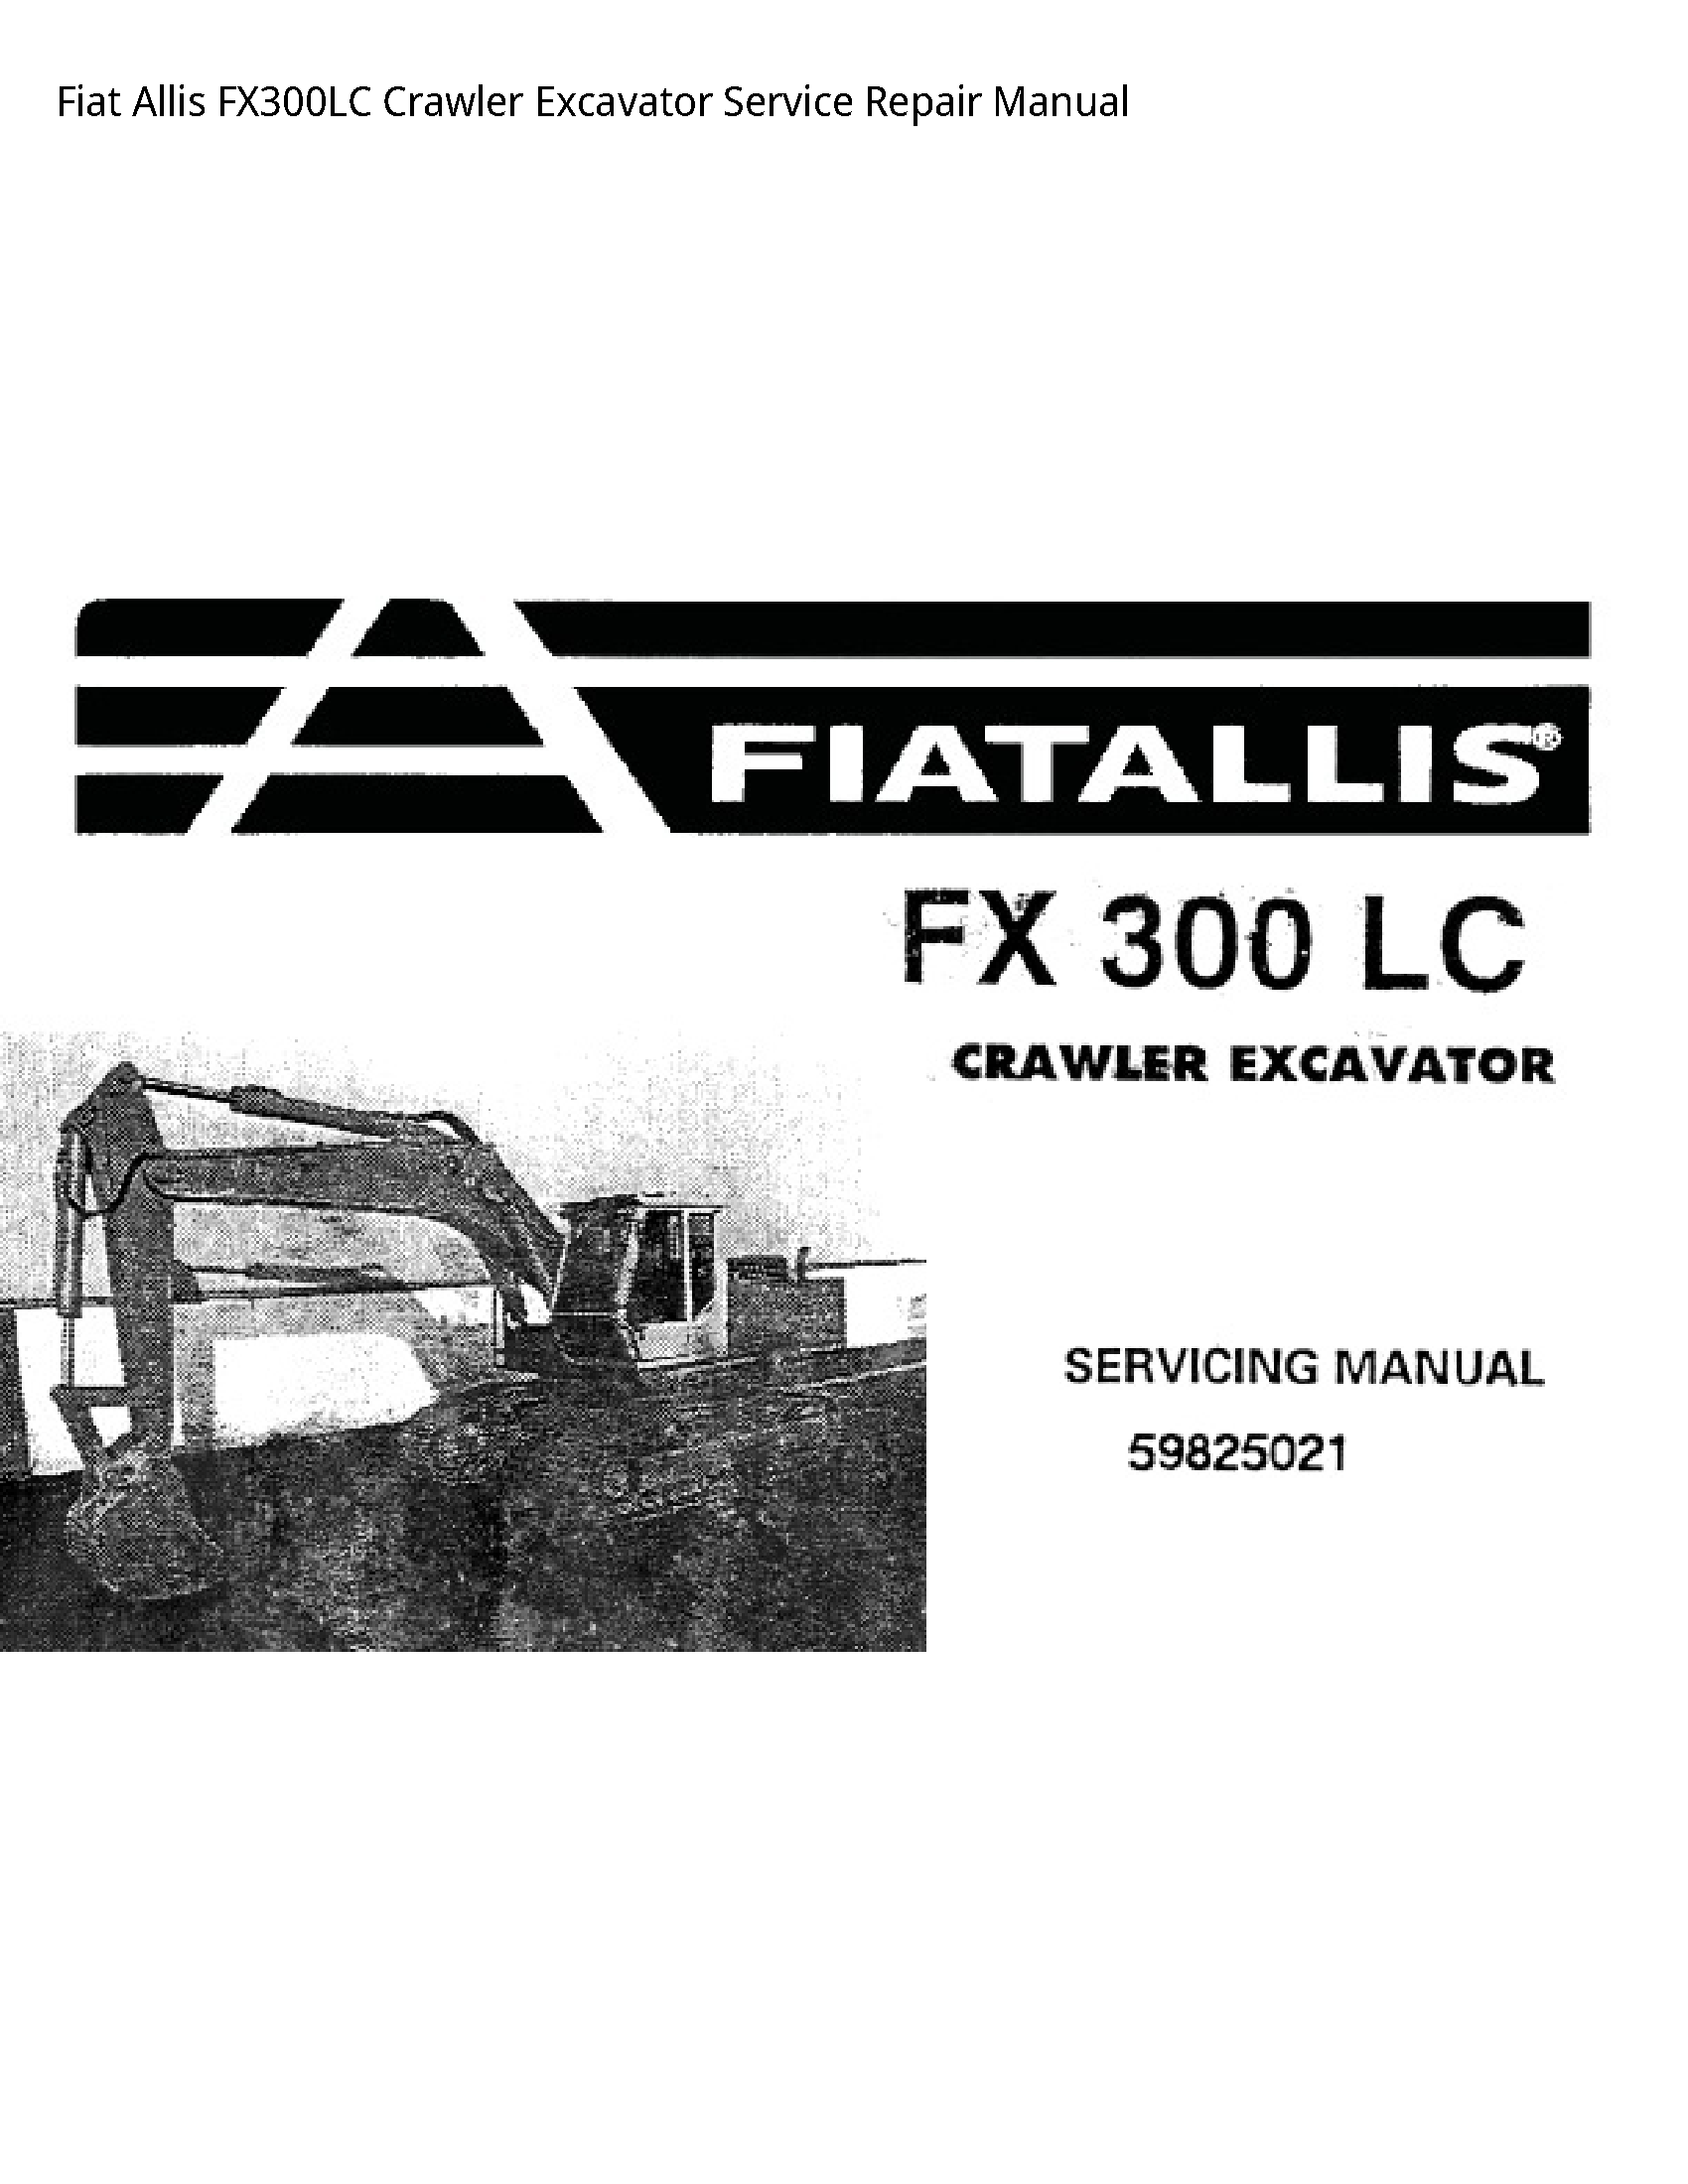 Fiat Allis FX300LC Crawler Excavator manual